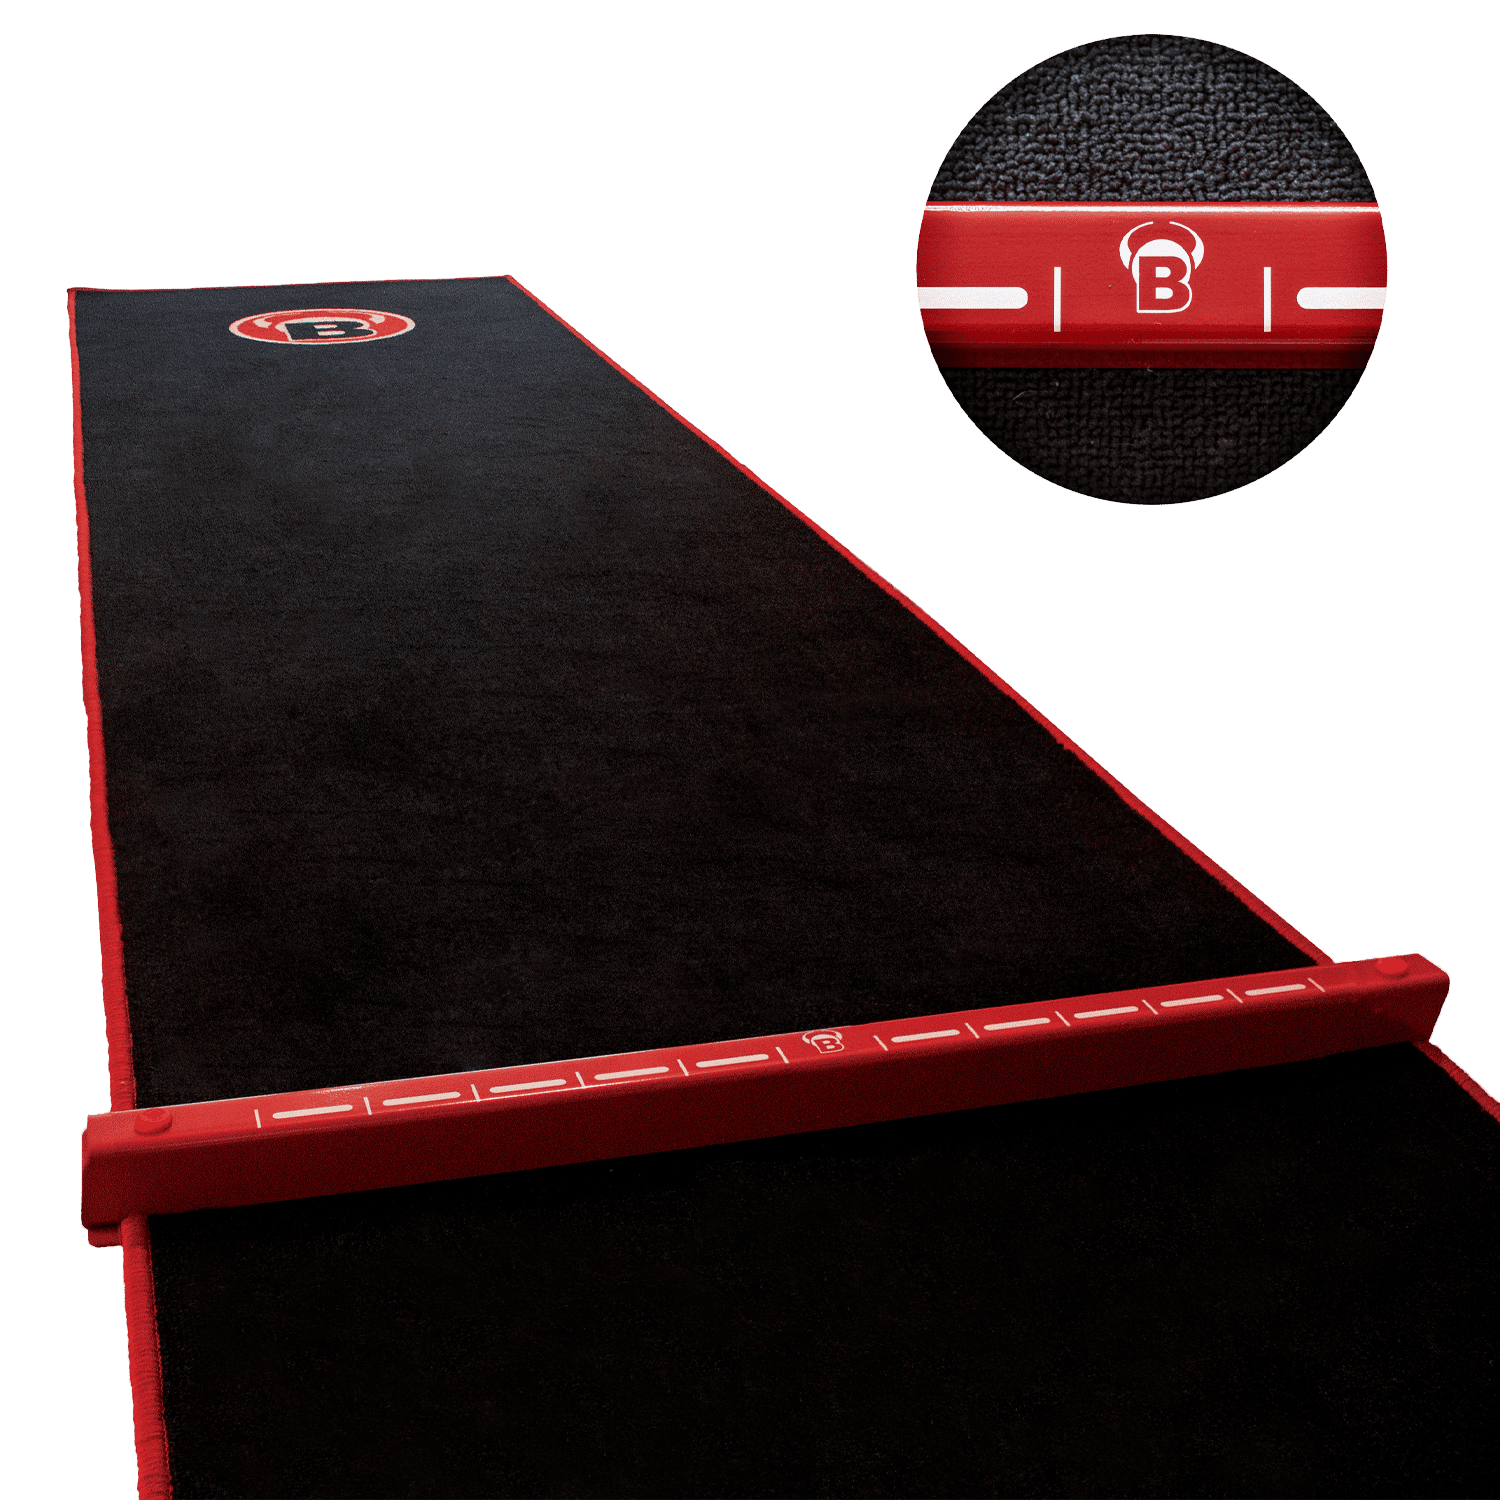 Bulls Oky System Carpet Mat 66 Dartmatte